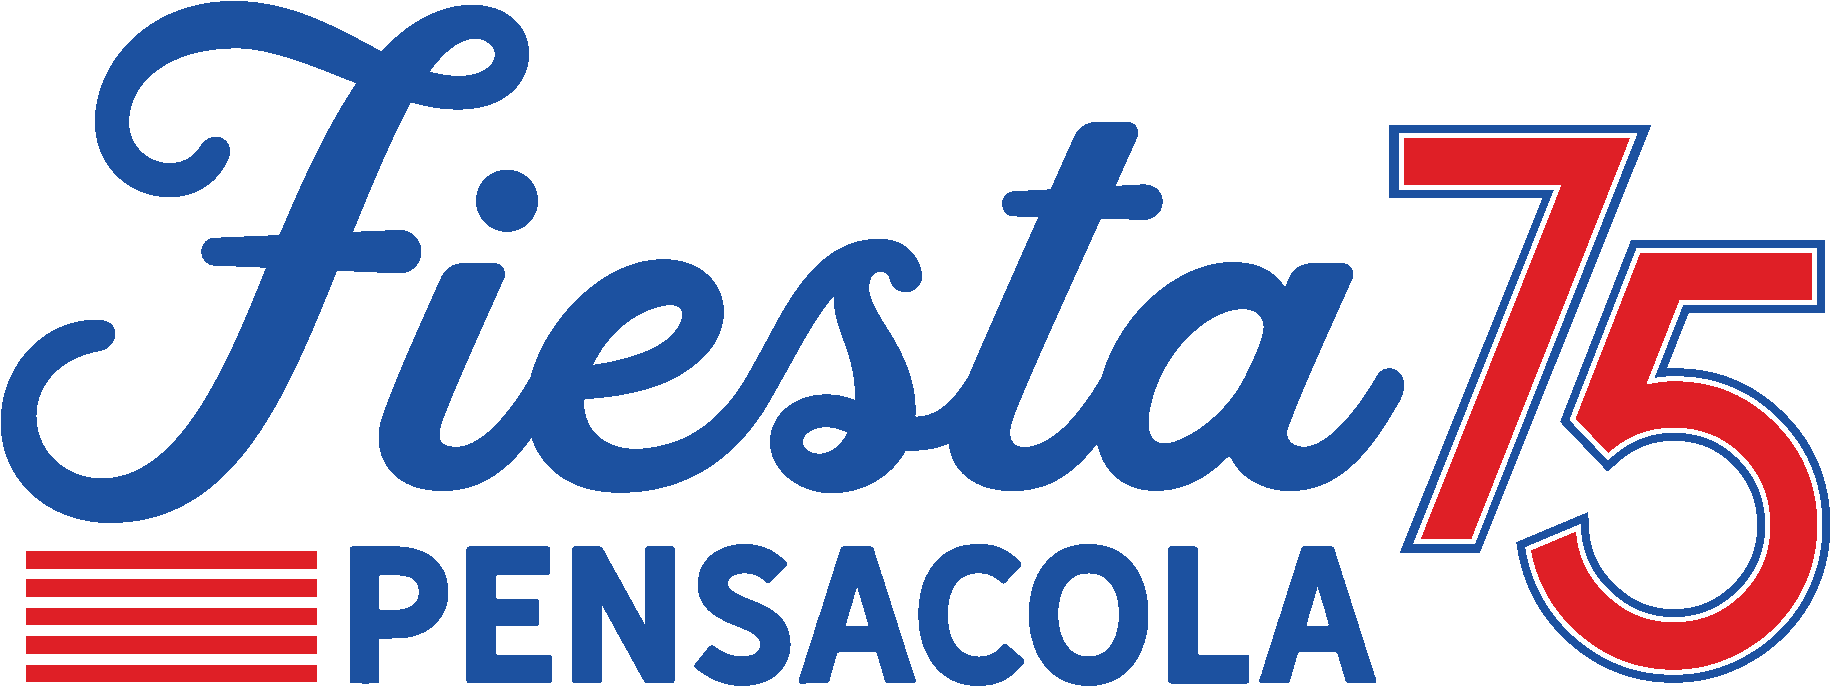 Fiesta Pensacola